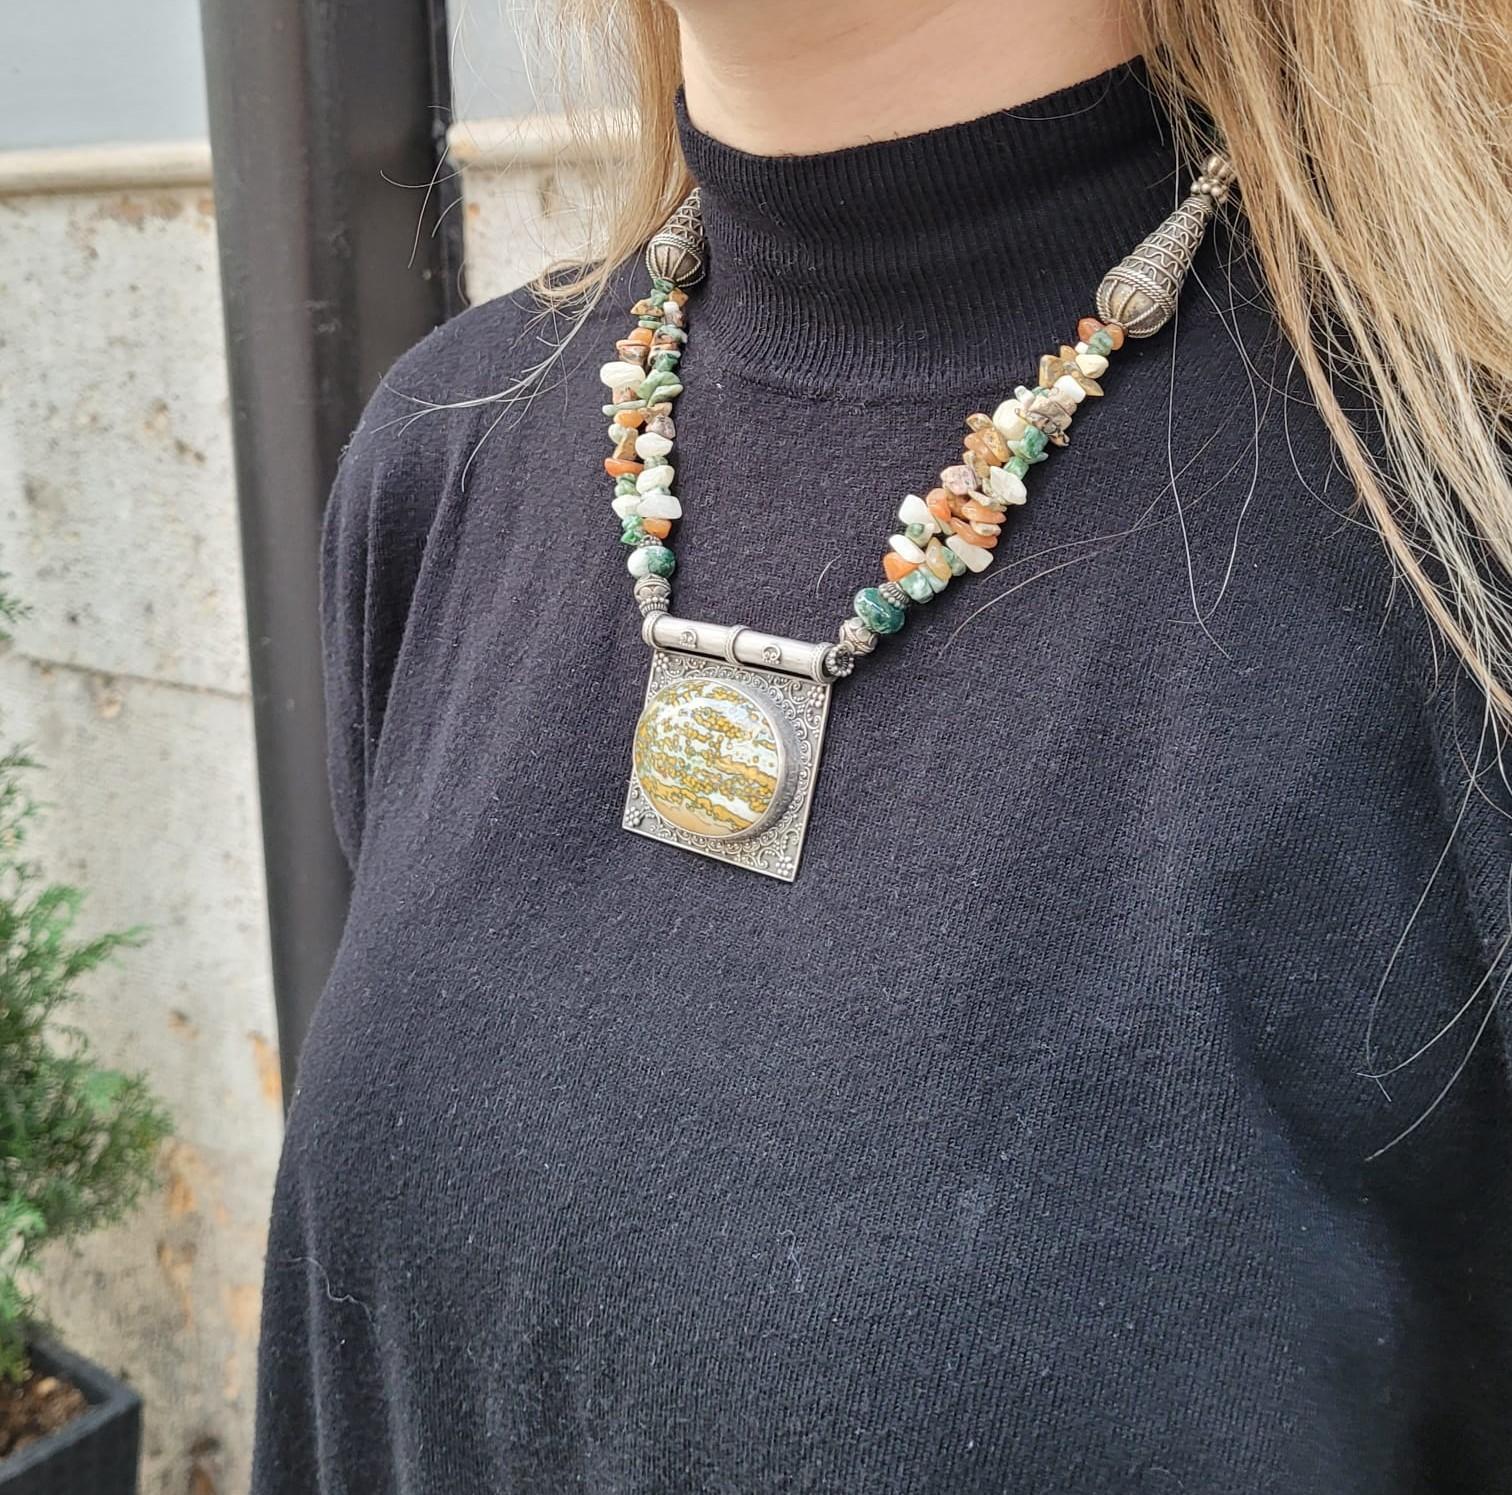 Collier tibétain en argent, jade et pierres semi-précieuses, années 70

Spectaculaire collier d'origine tibétaine réalisé dans les années 70 du siècle dernier. La chaîne est ornée de petites pierres semi-précieuses naturelles, ainsi que de deux